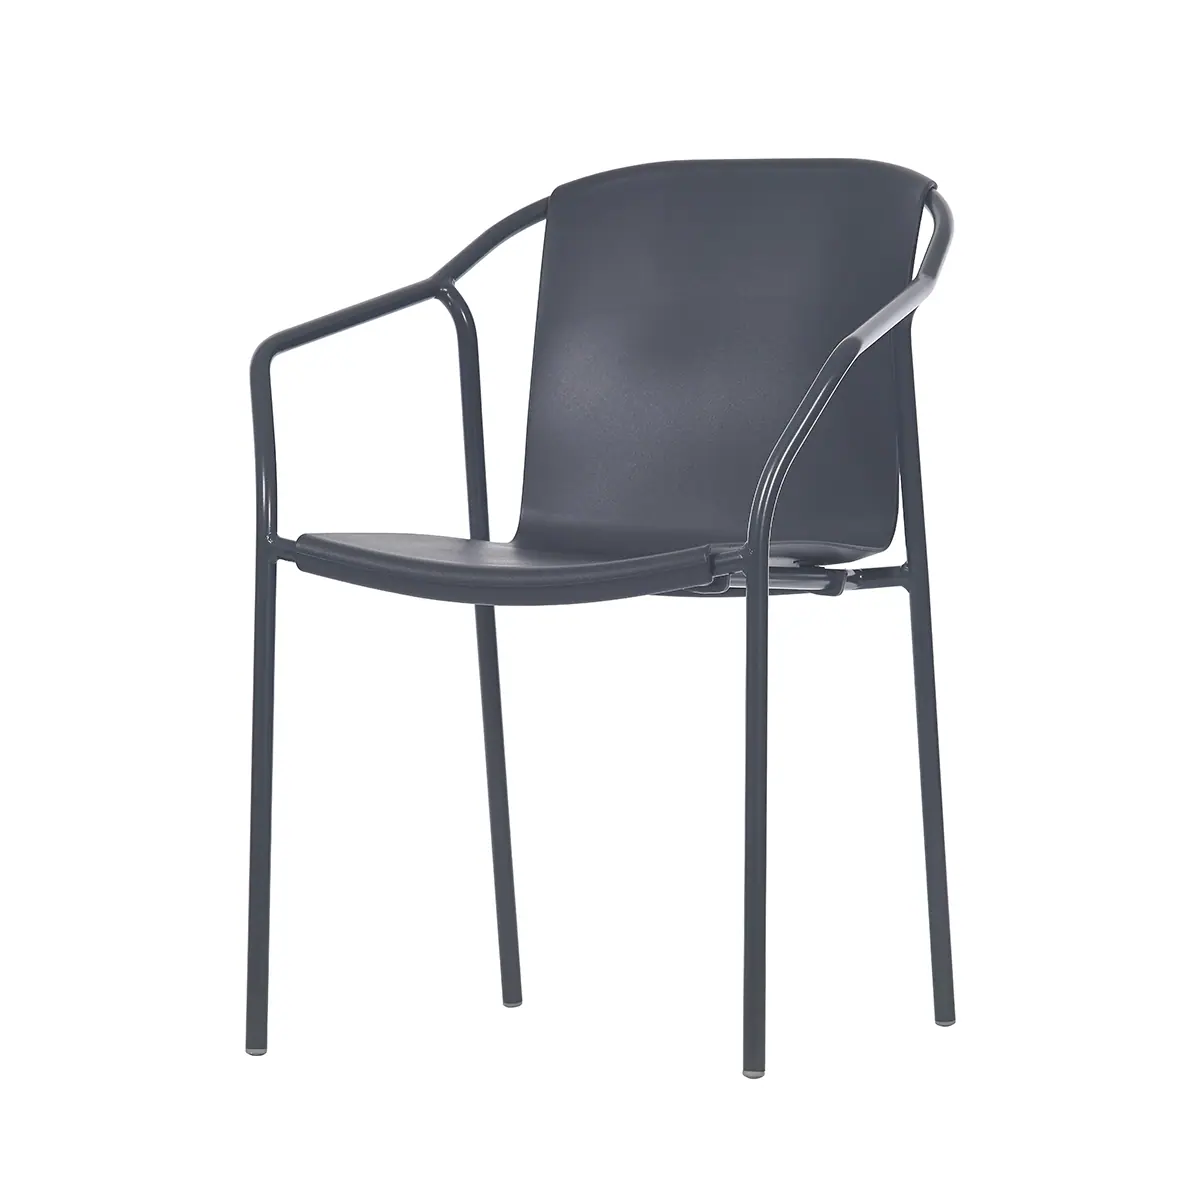 81502-53711-rod-chair